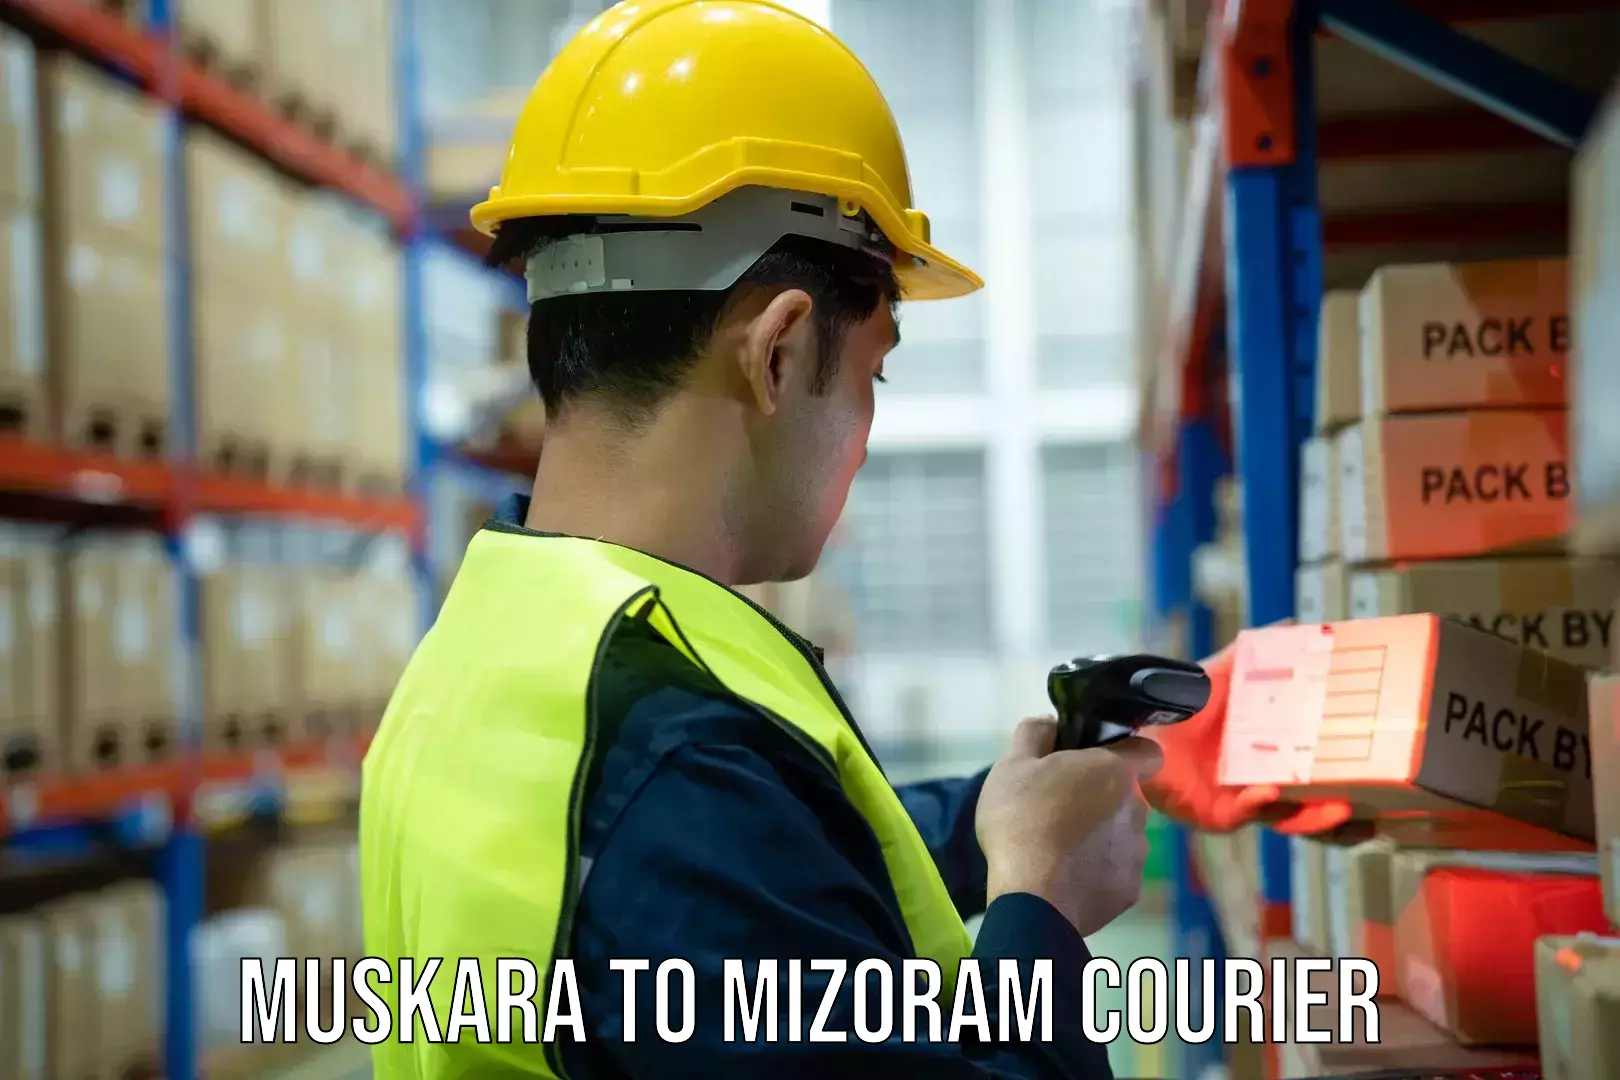 Easy access courier services Muskara to Mizoram